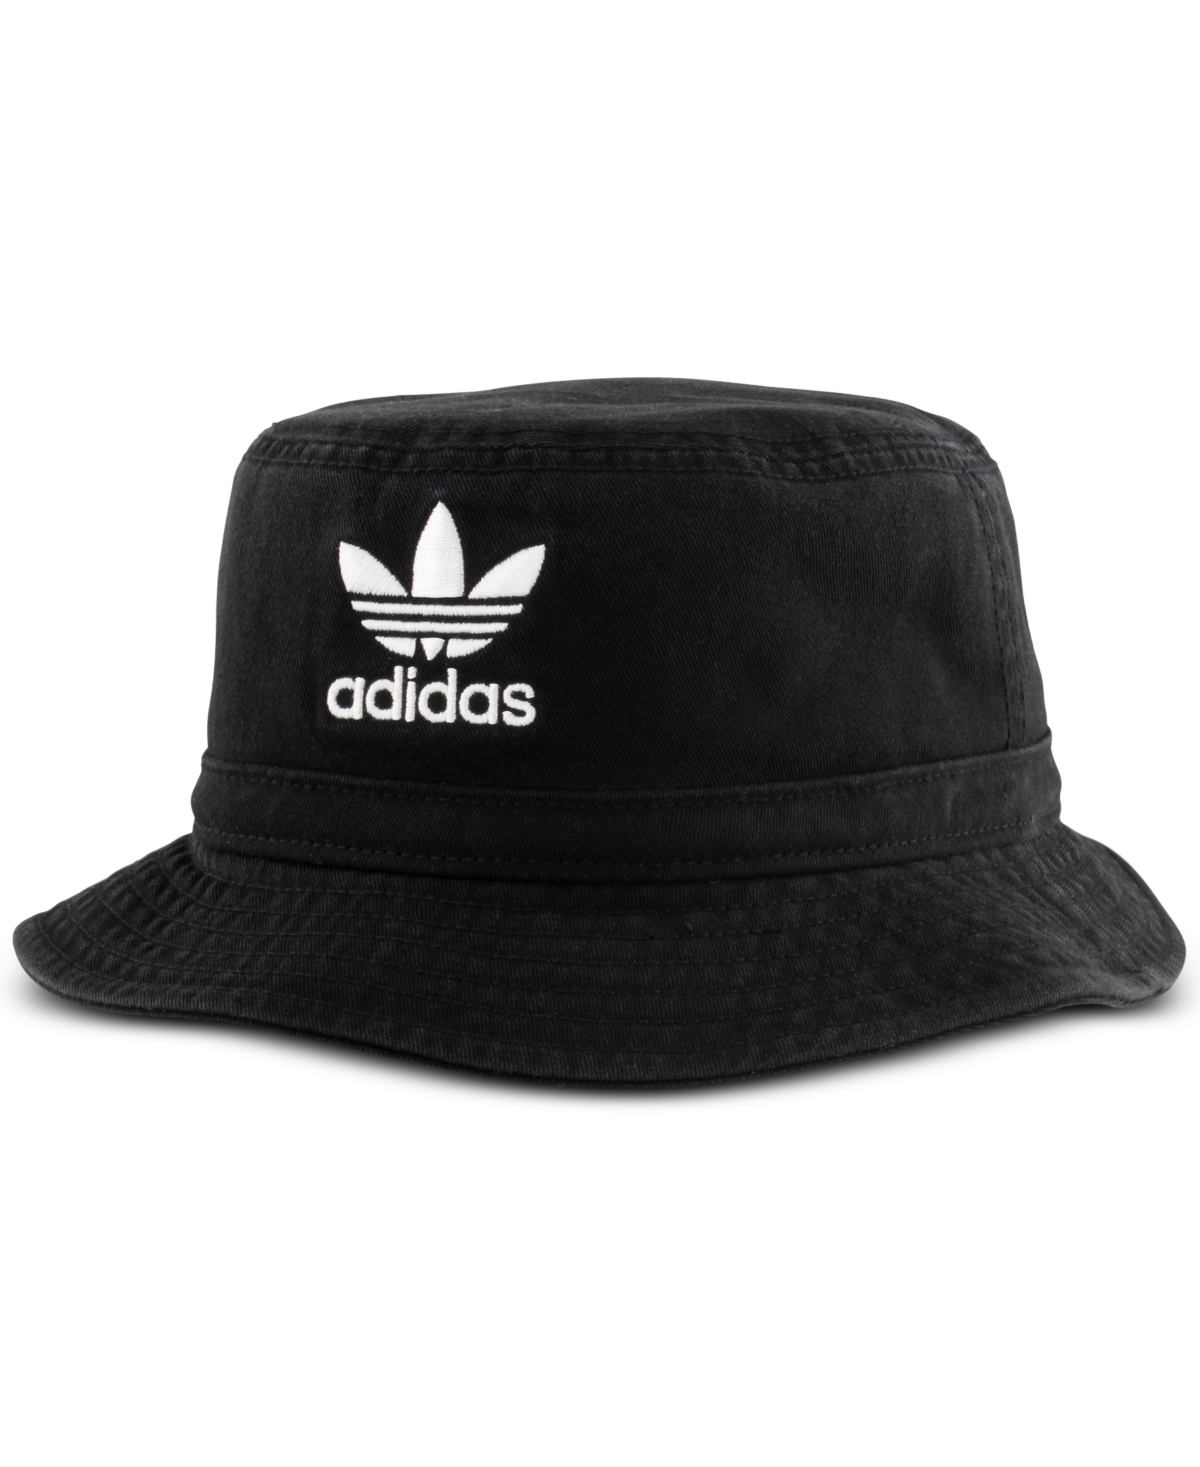 adidas Men's Originals Washed Bucket Hat